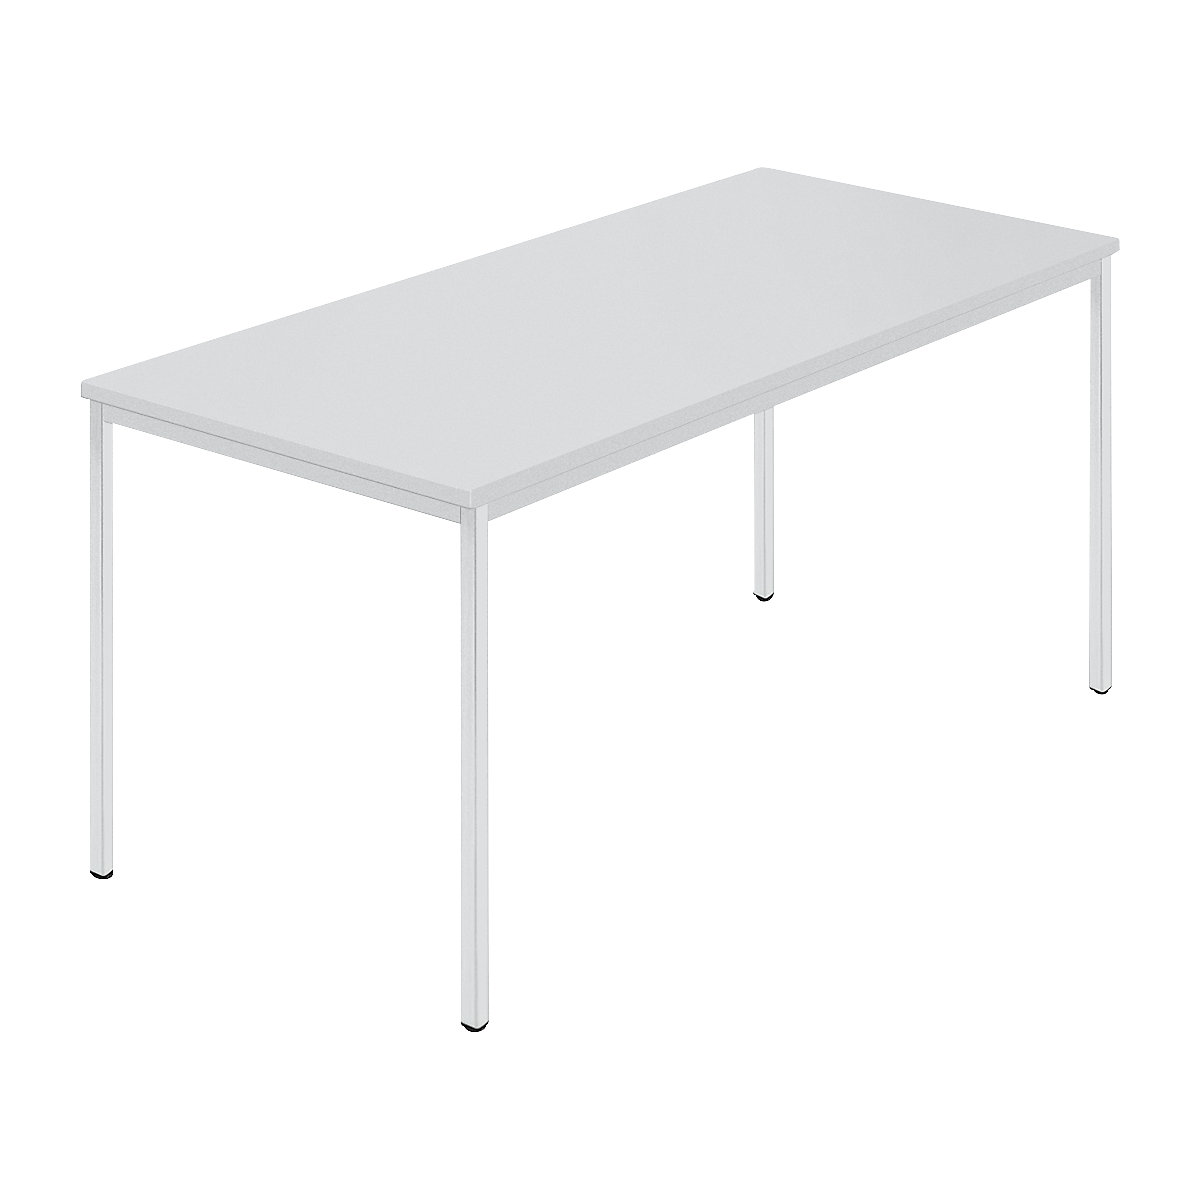 Rechthoekige tafel, vierkante buis met coating, b x d = 1500 x 800 mm, grijs / grijs-6